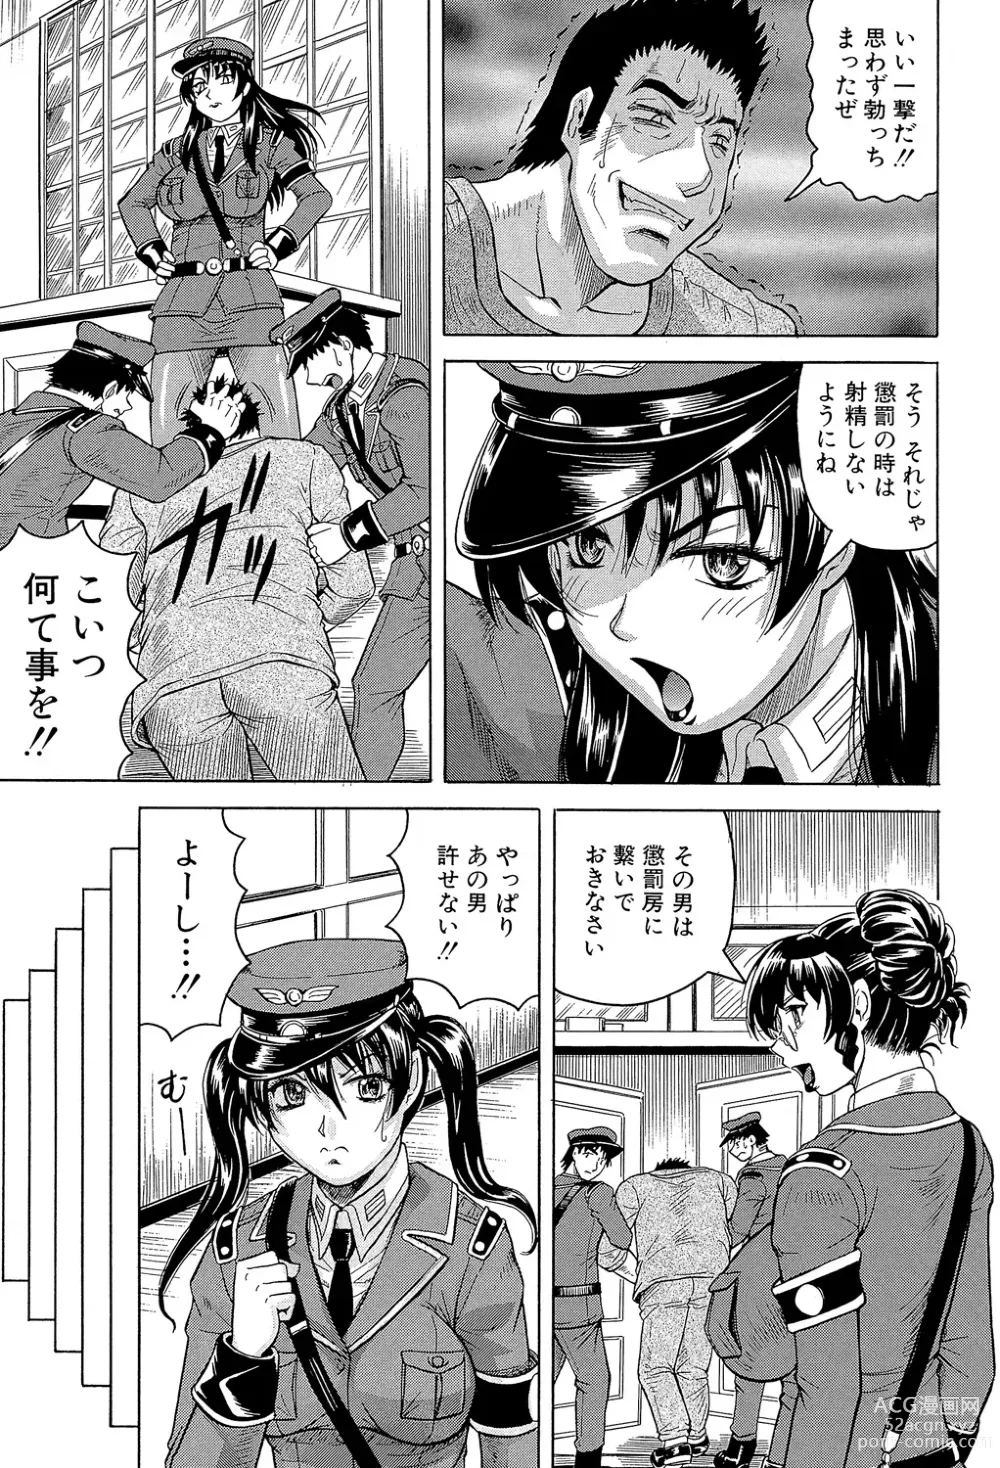 Page 11 of manga Kangokujima